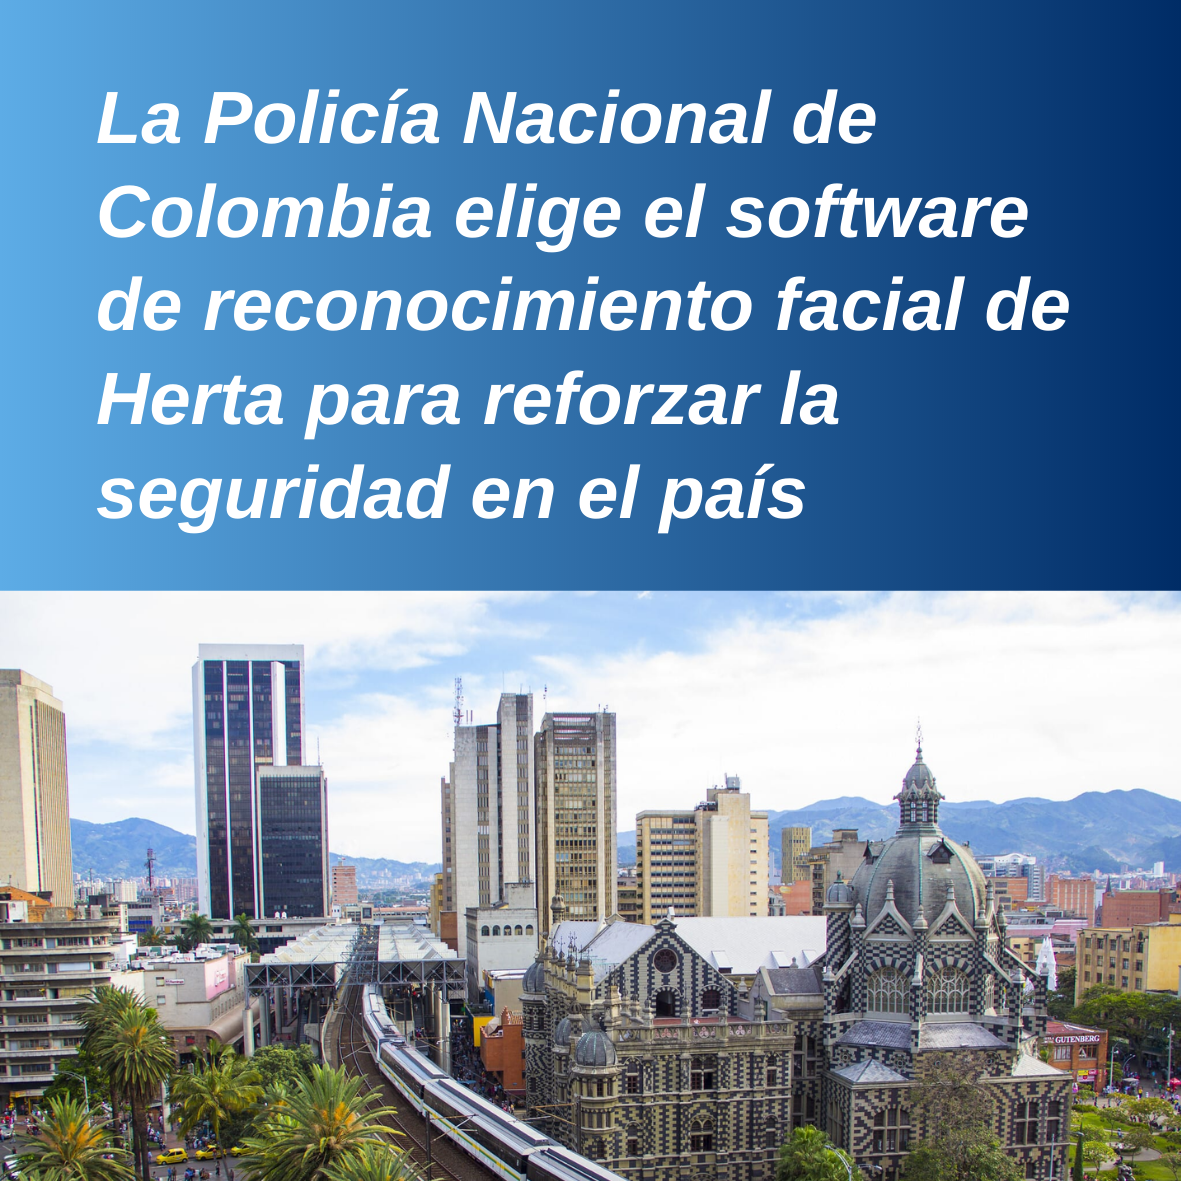 La Policía Nacional de Colombia elige el software de reconocimiento facial de Herta para reforzar la seguridad en el país